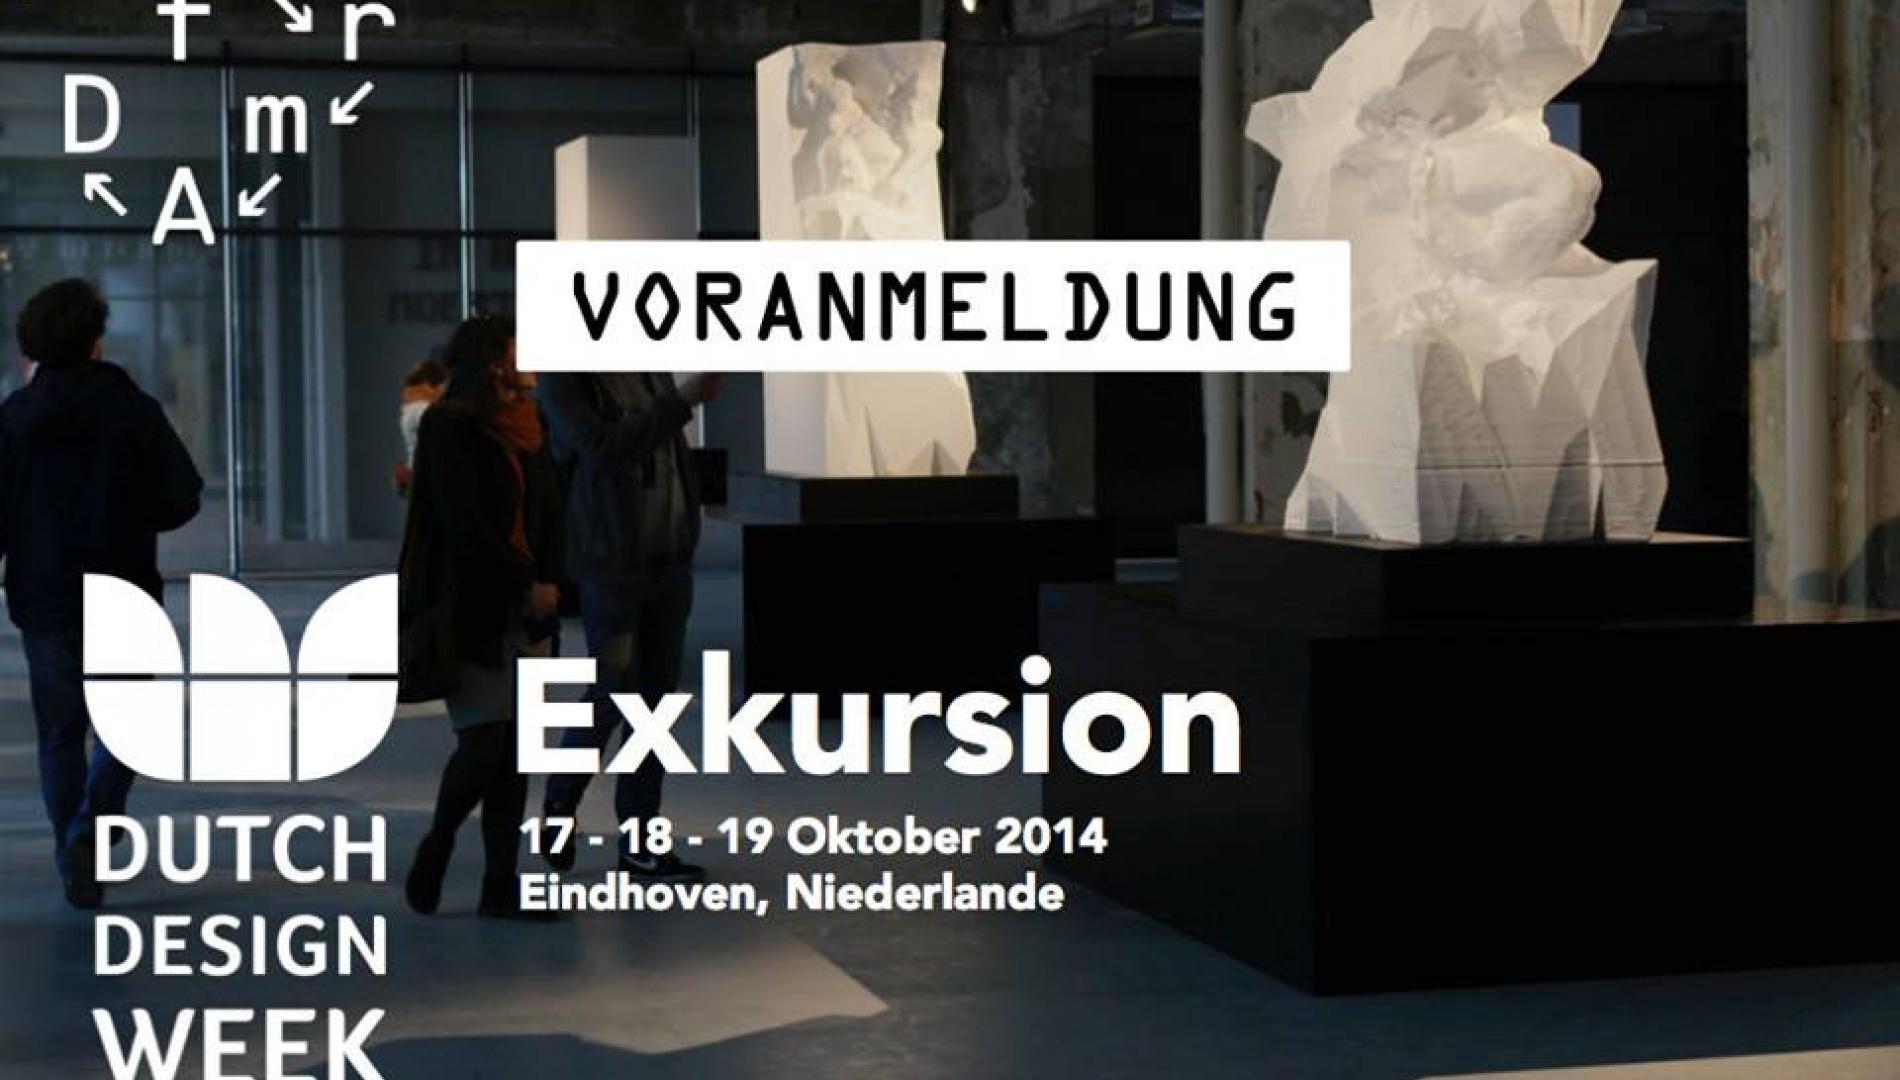 Exkursion zum Dutch Design Week October 2014 in Eindhoven, Niederlande